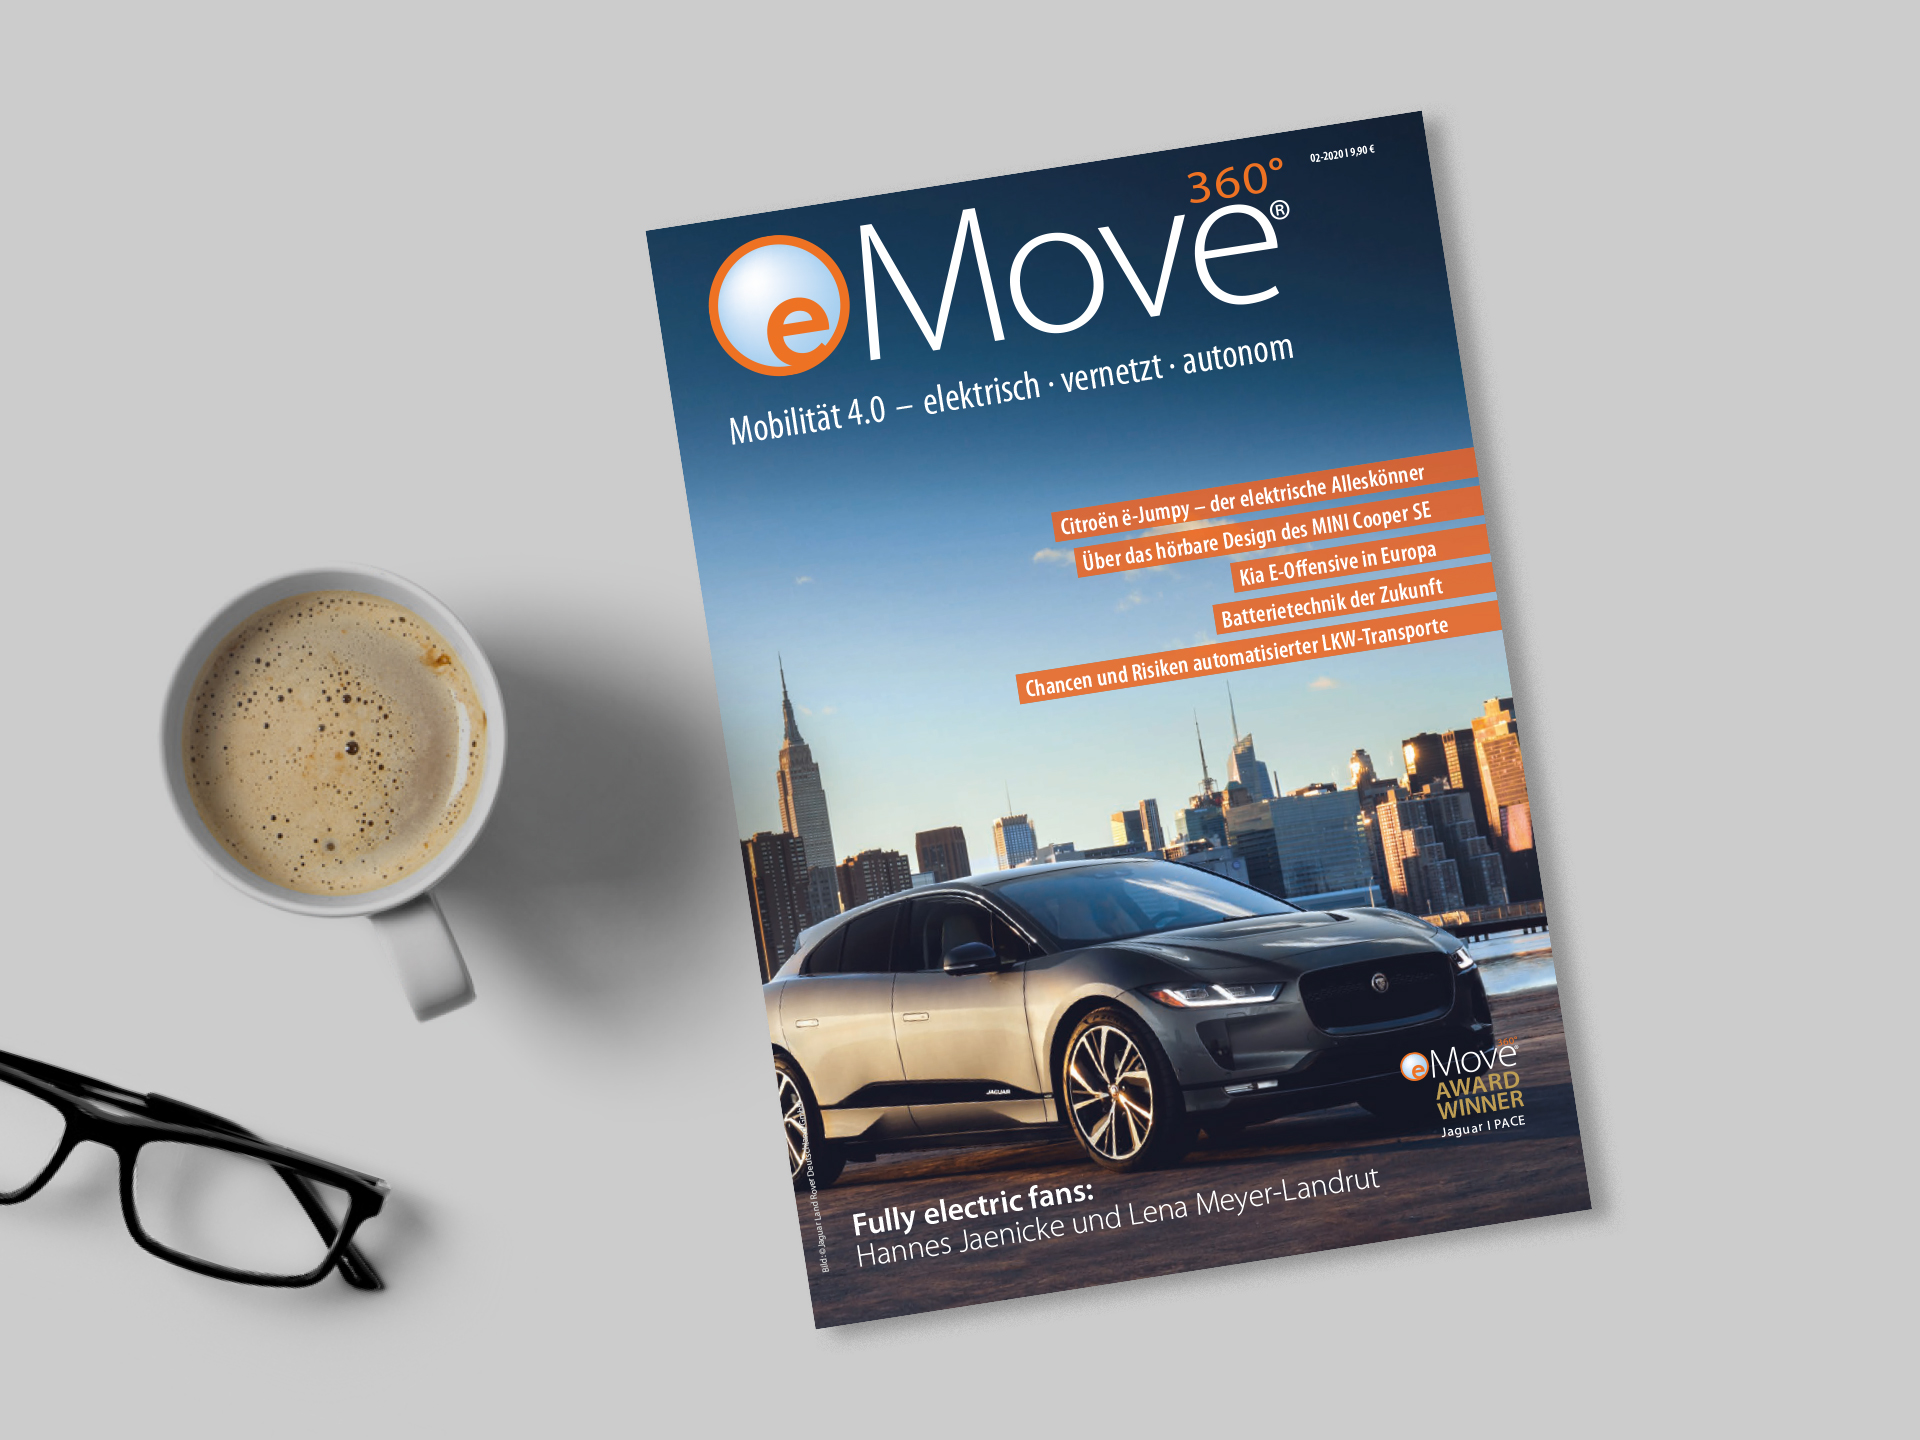 Das Magazin eMove360 Grad liegt auf einem Tisch neben einer Kaffeetasse und einer Brille